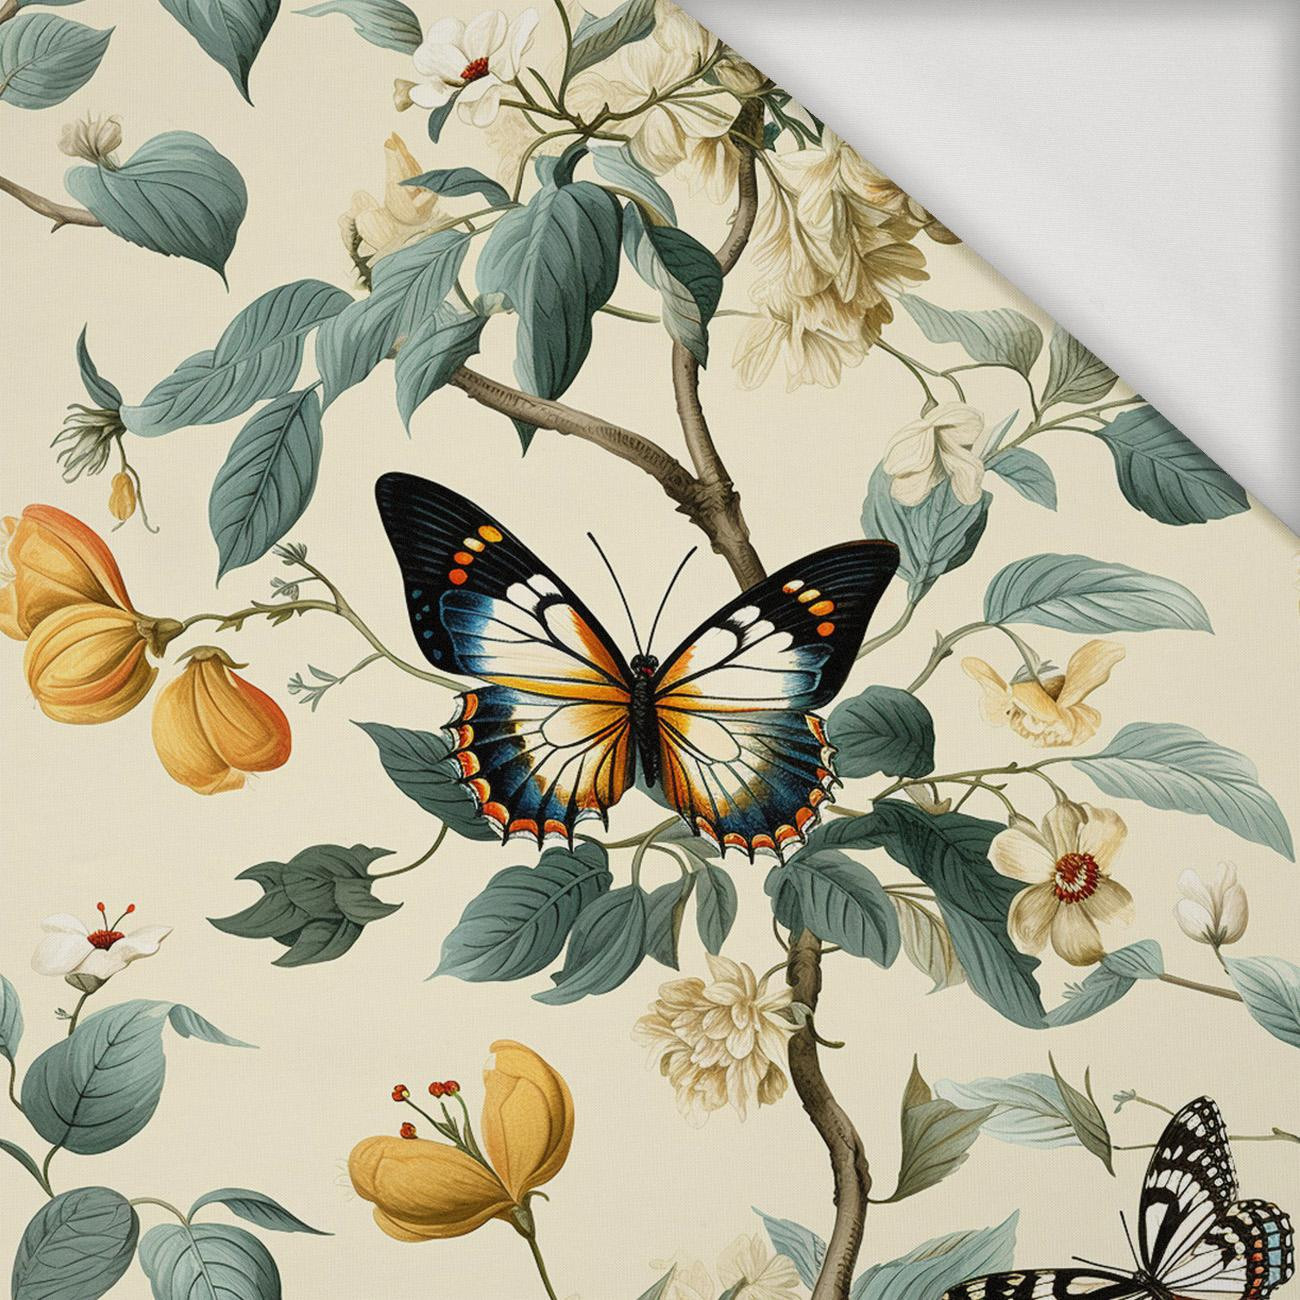 Butterfly & Flowers wz.2 - Jersey wiskozowy